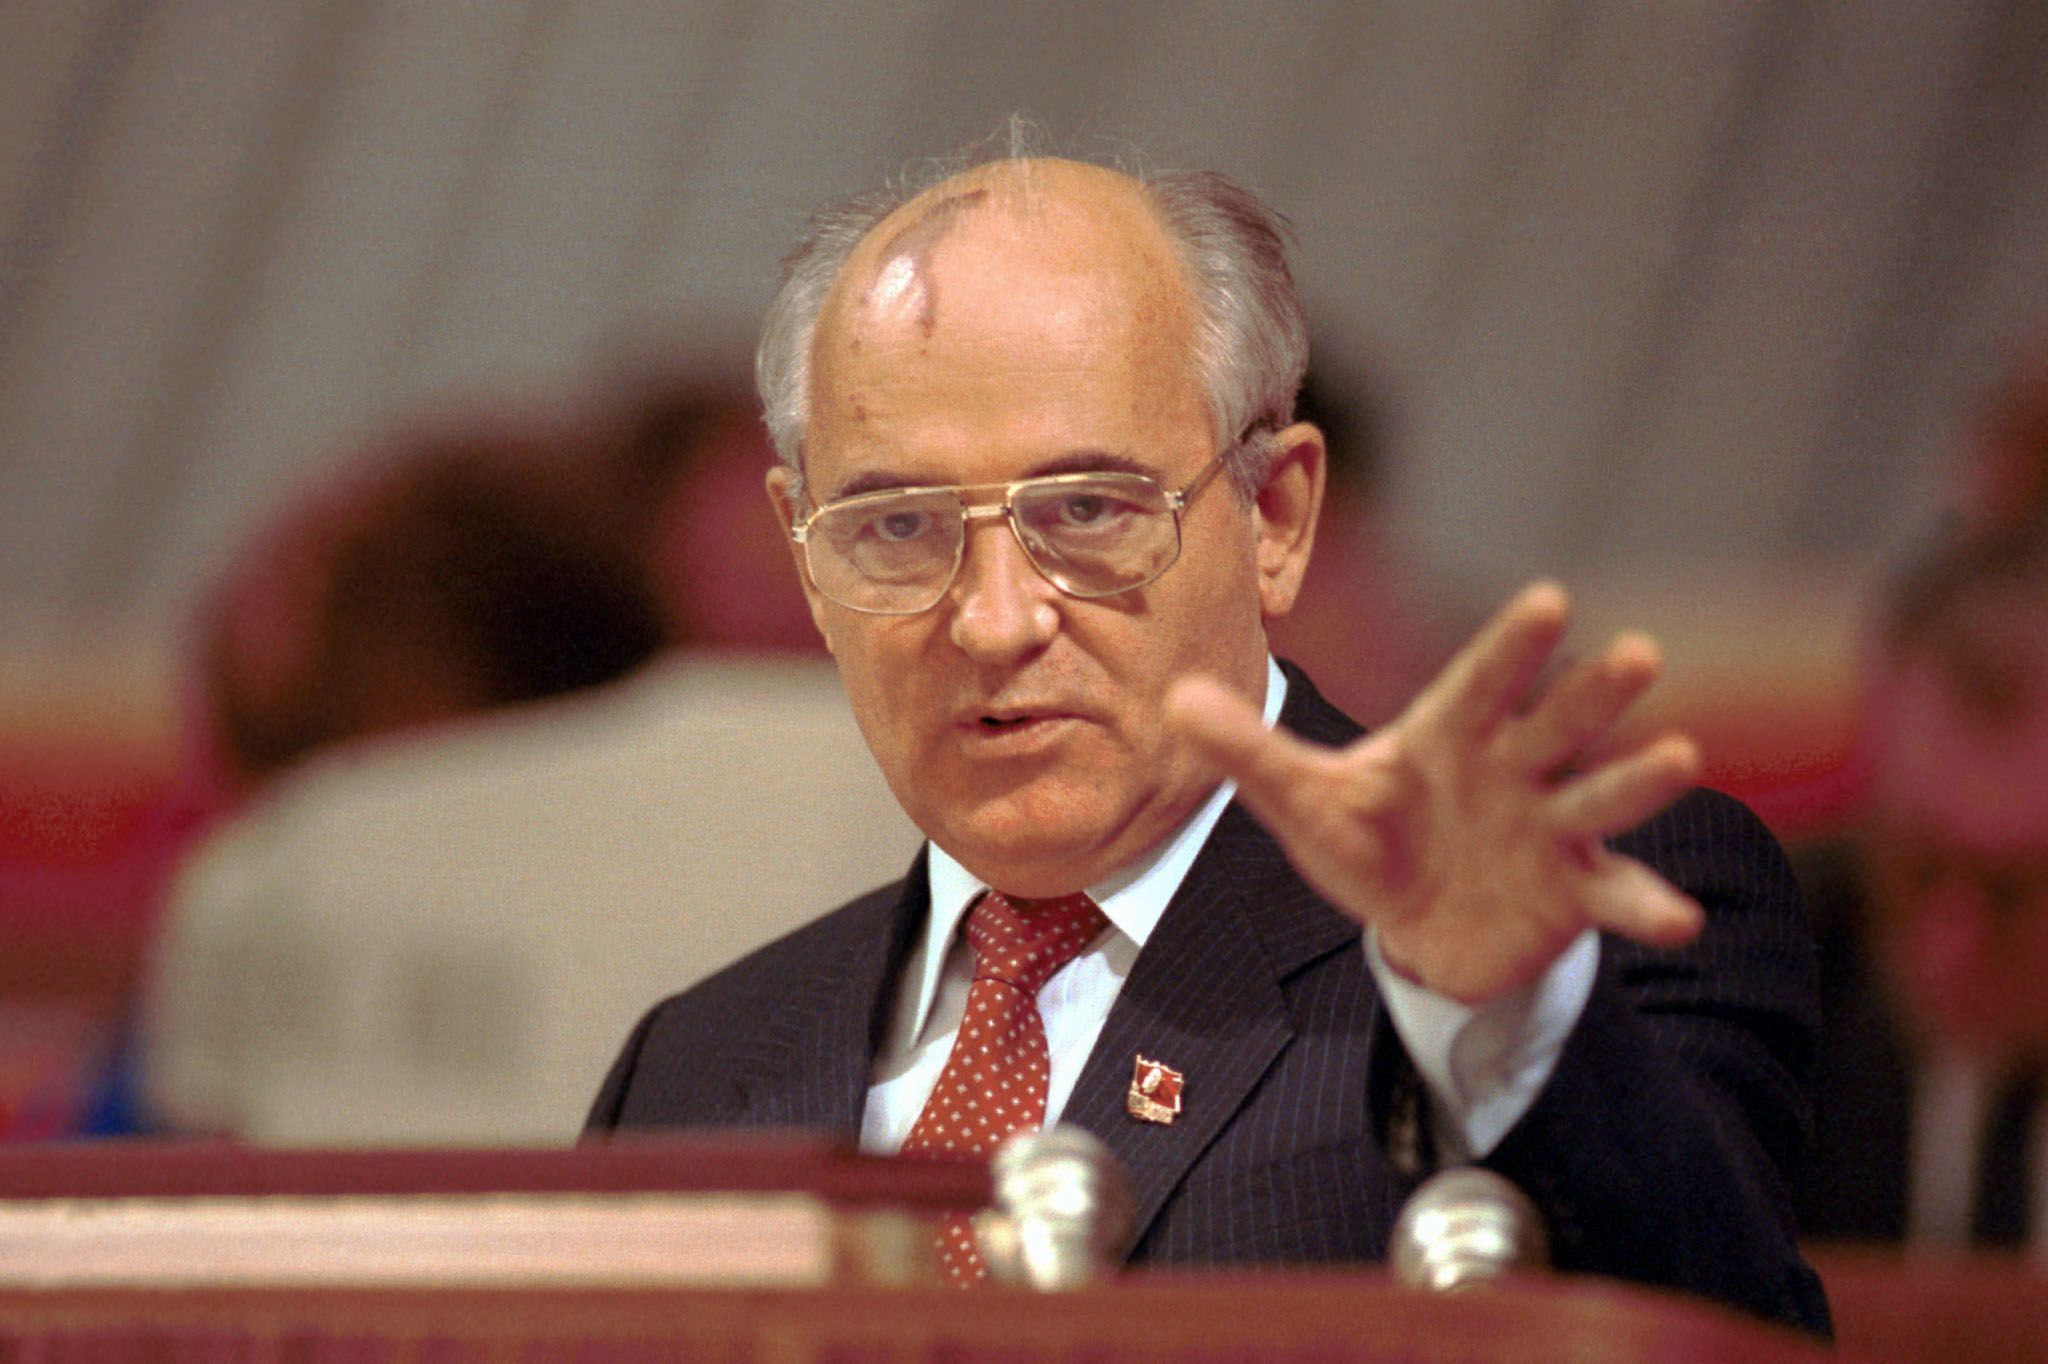 Сколько лет горбачев был у власти. Горбачев 1991.